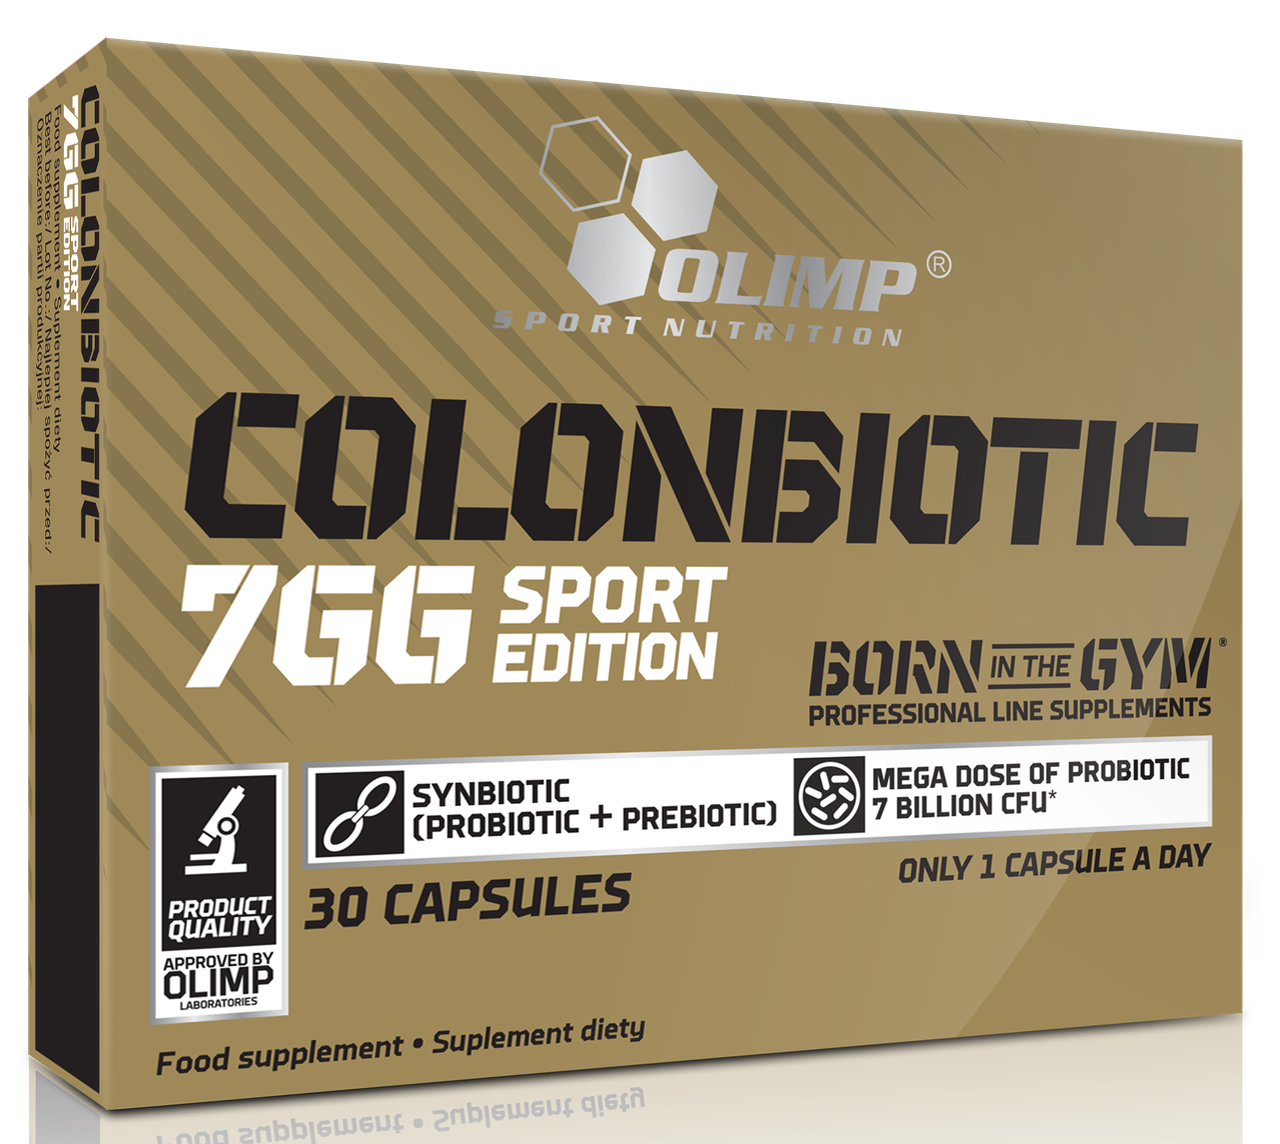 Olimp Colonbiotic 7GG Sport Edition 30 caps